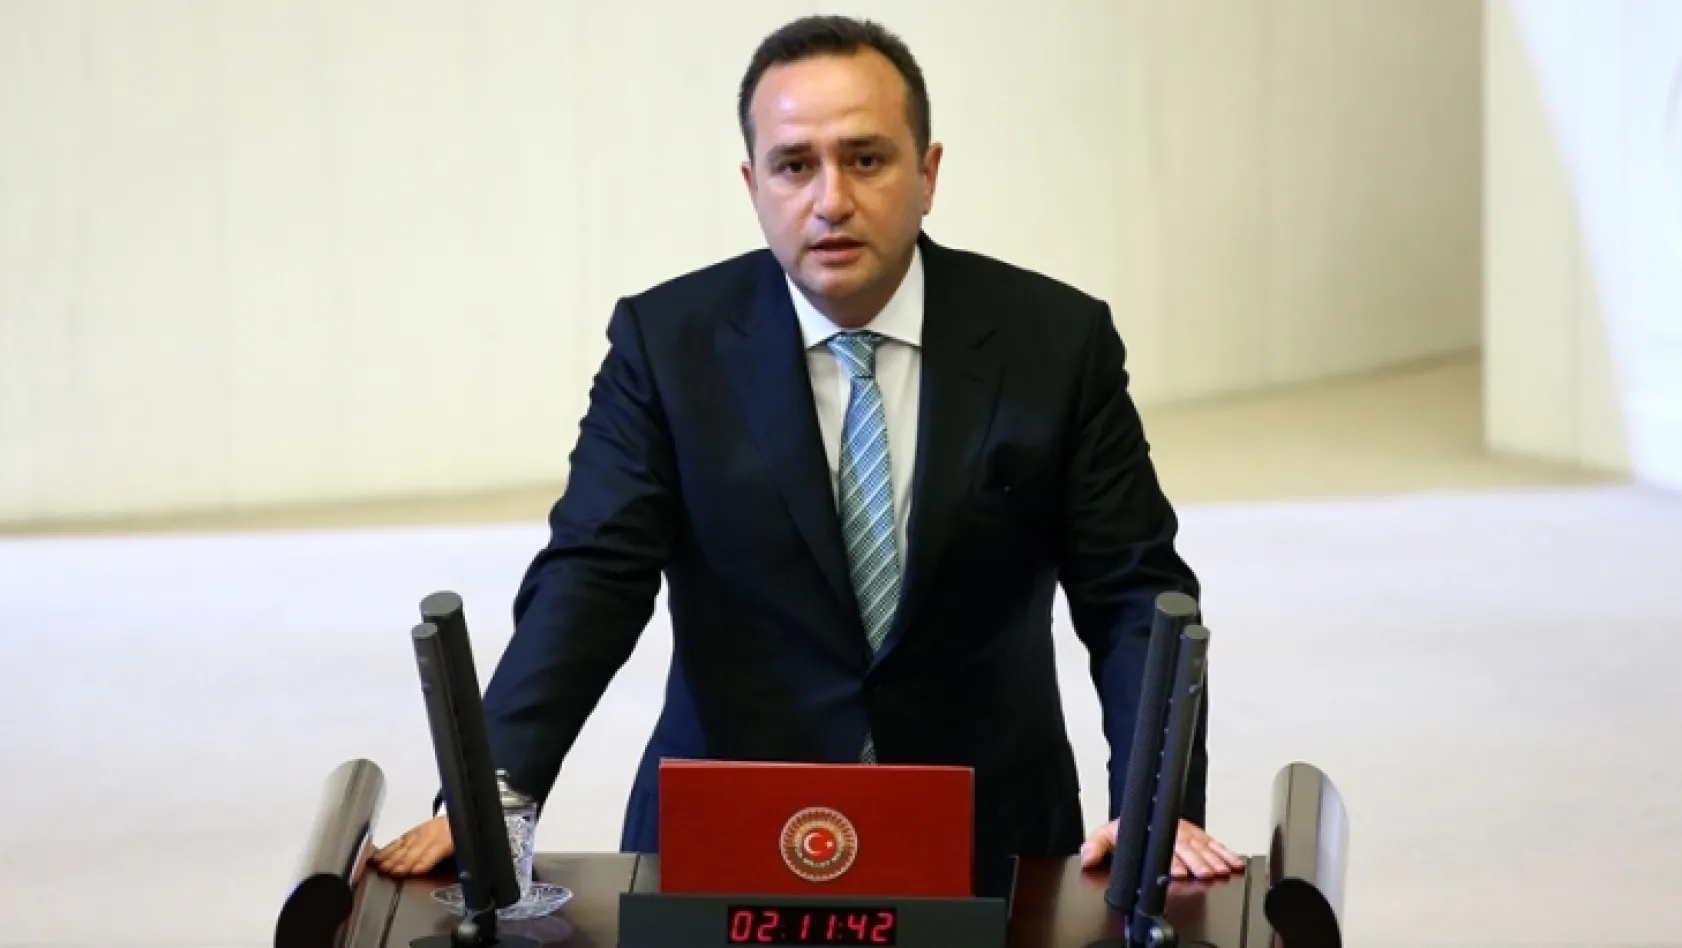 Milletvekili Zülfü Tolga Ağar, hastaneye kaldırıldı